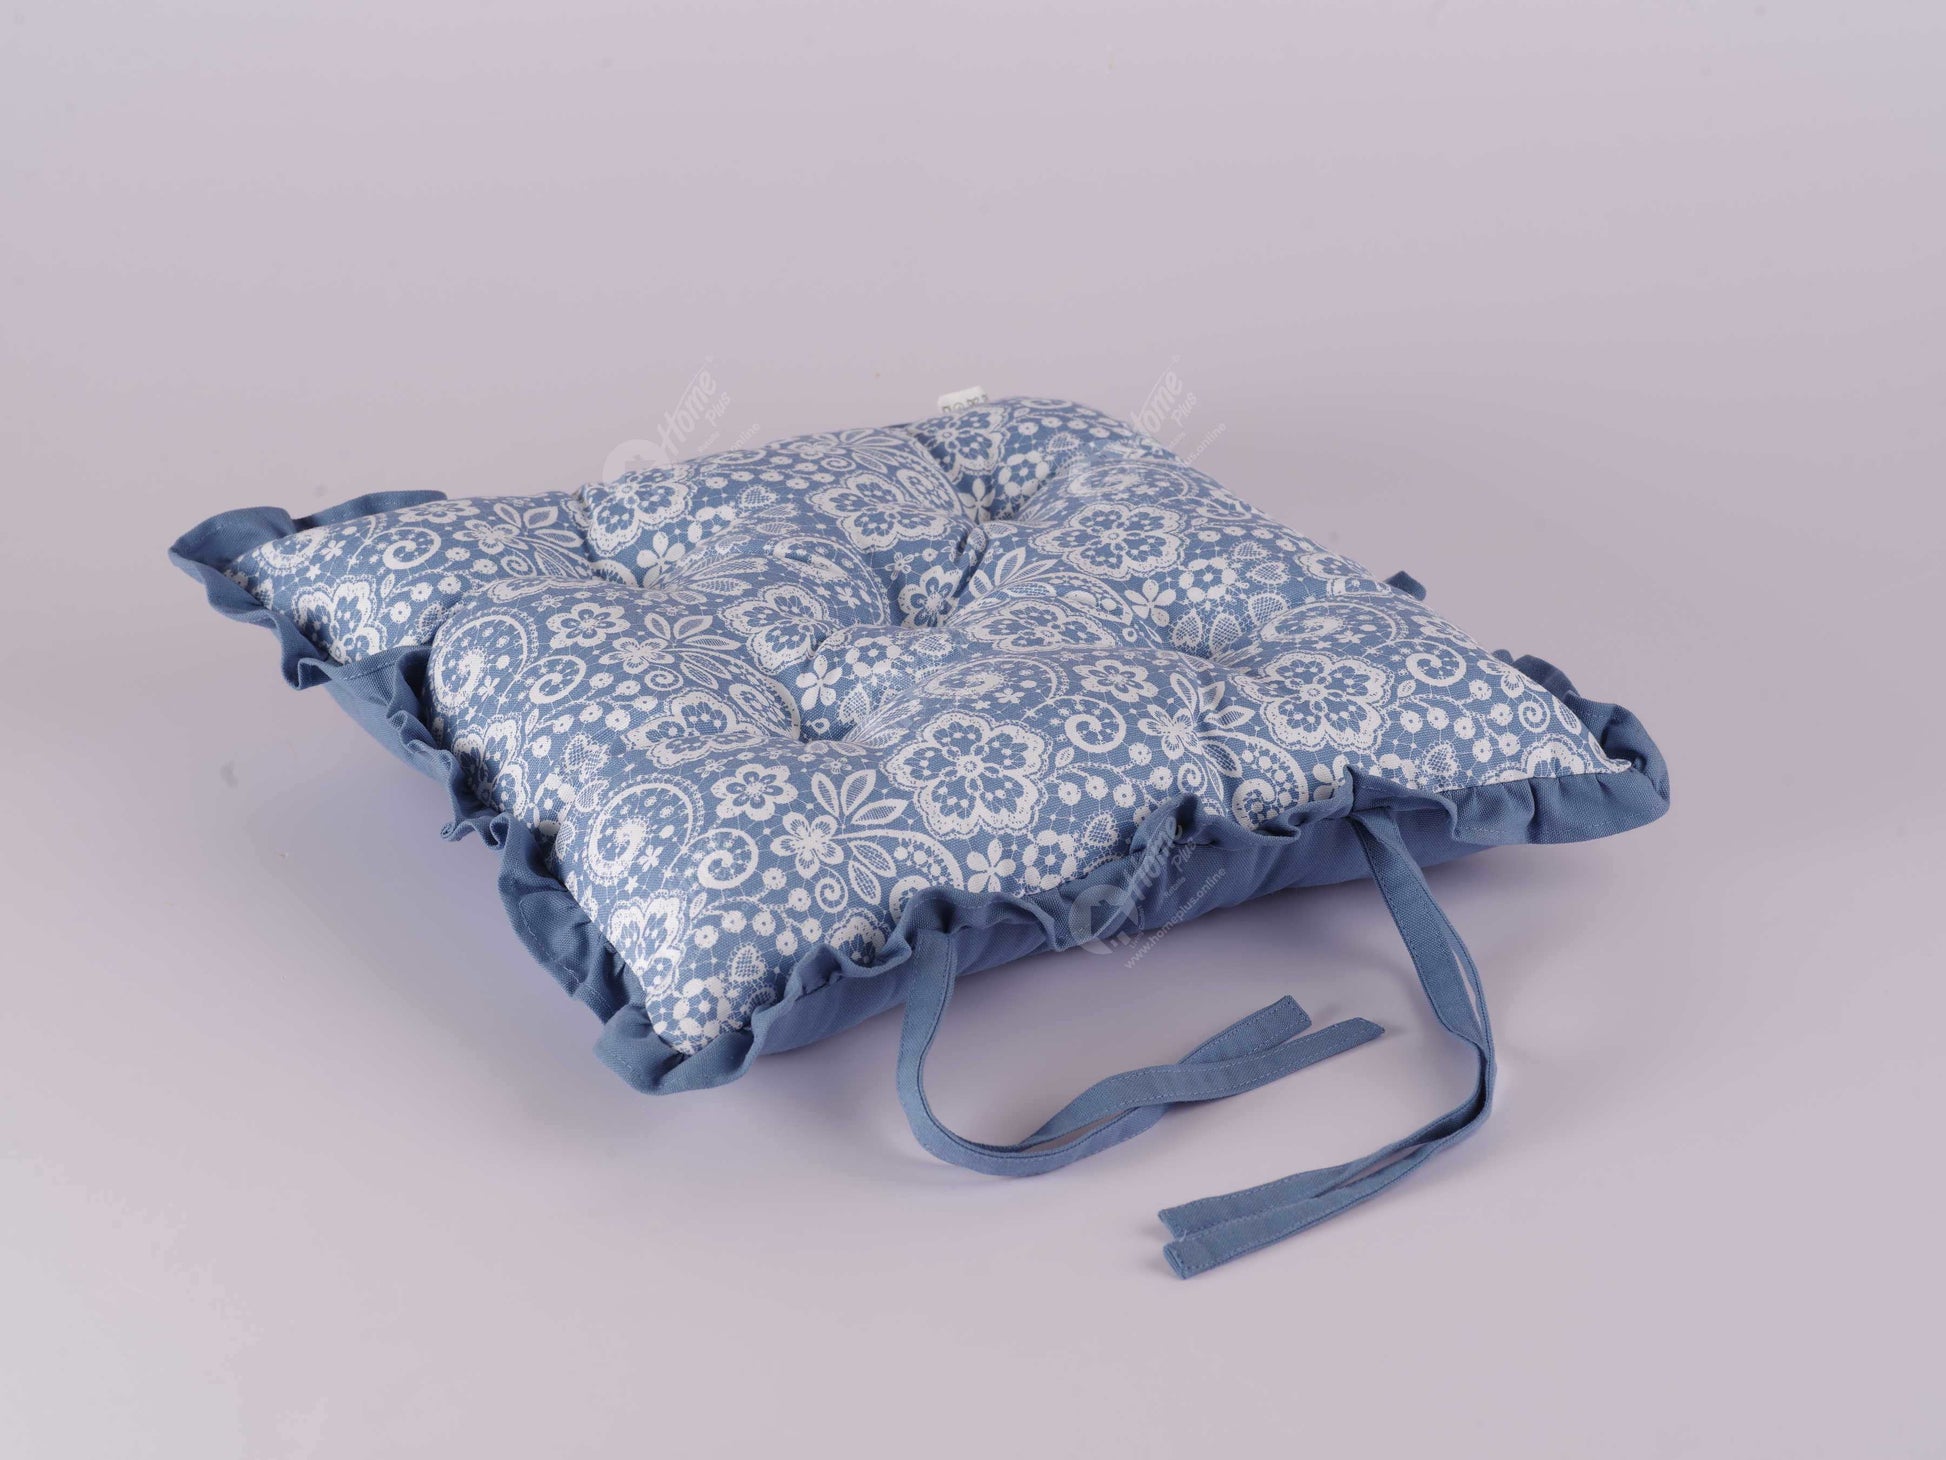 Frill Cushion - Lace AF Blue